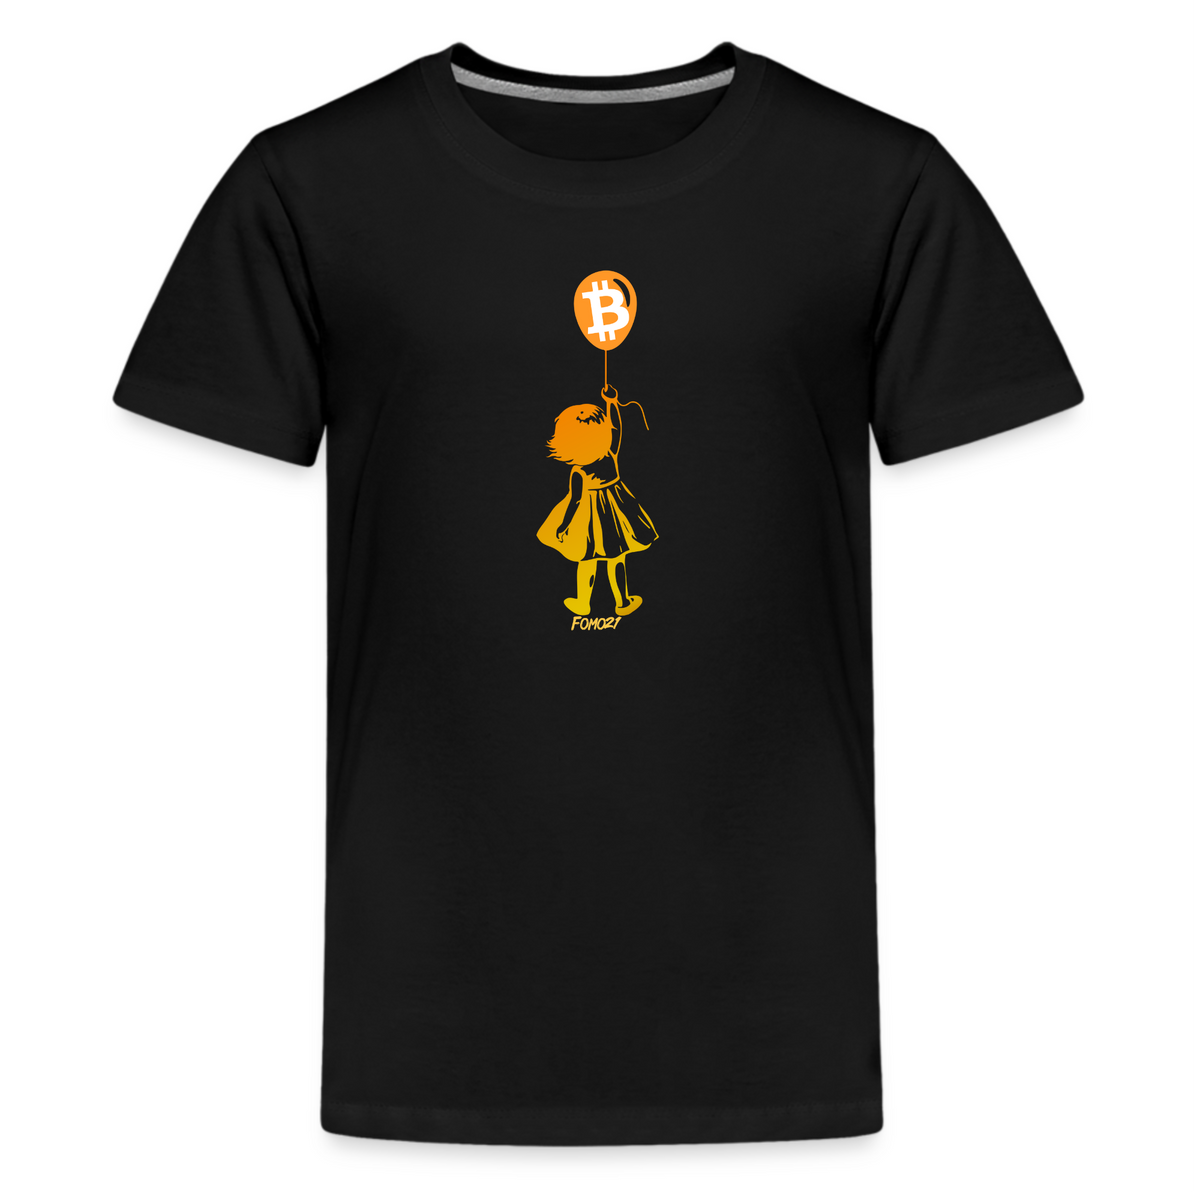 Bitcoin Balloon Girl Youth T-Shirt - fomo21